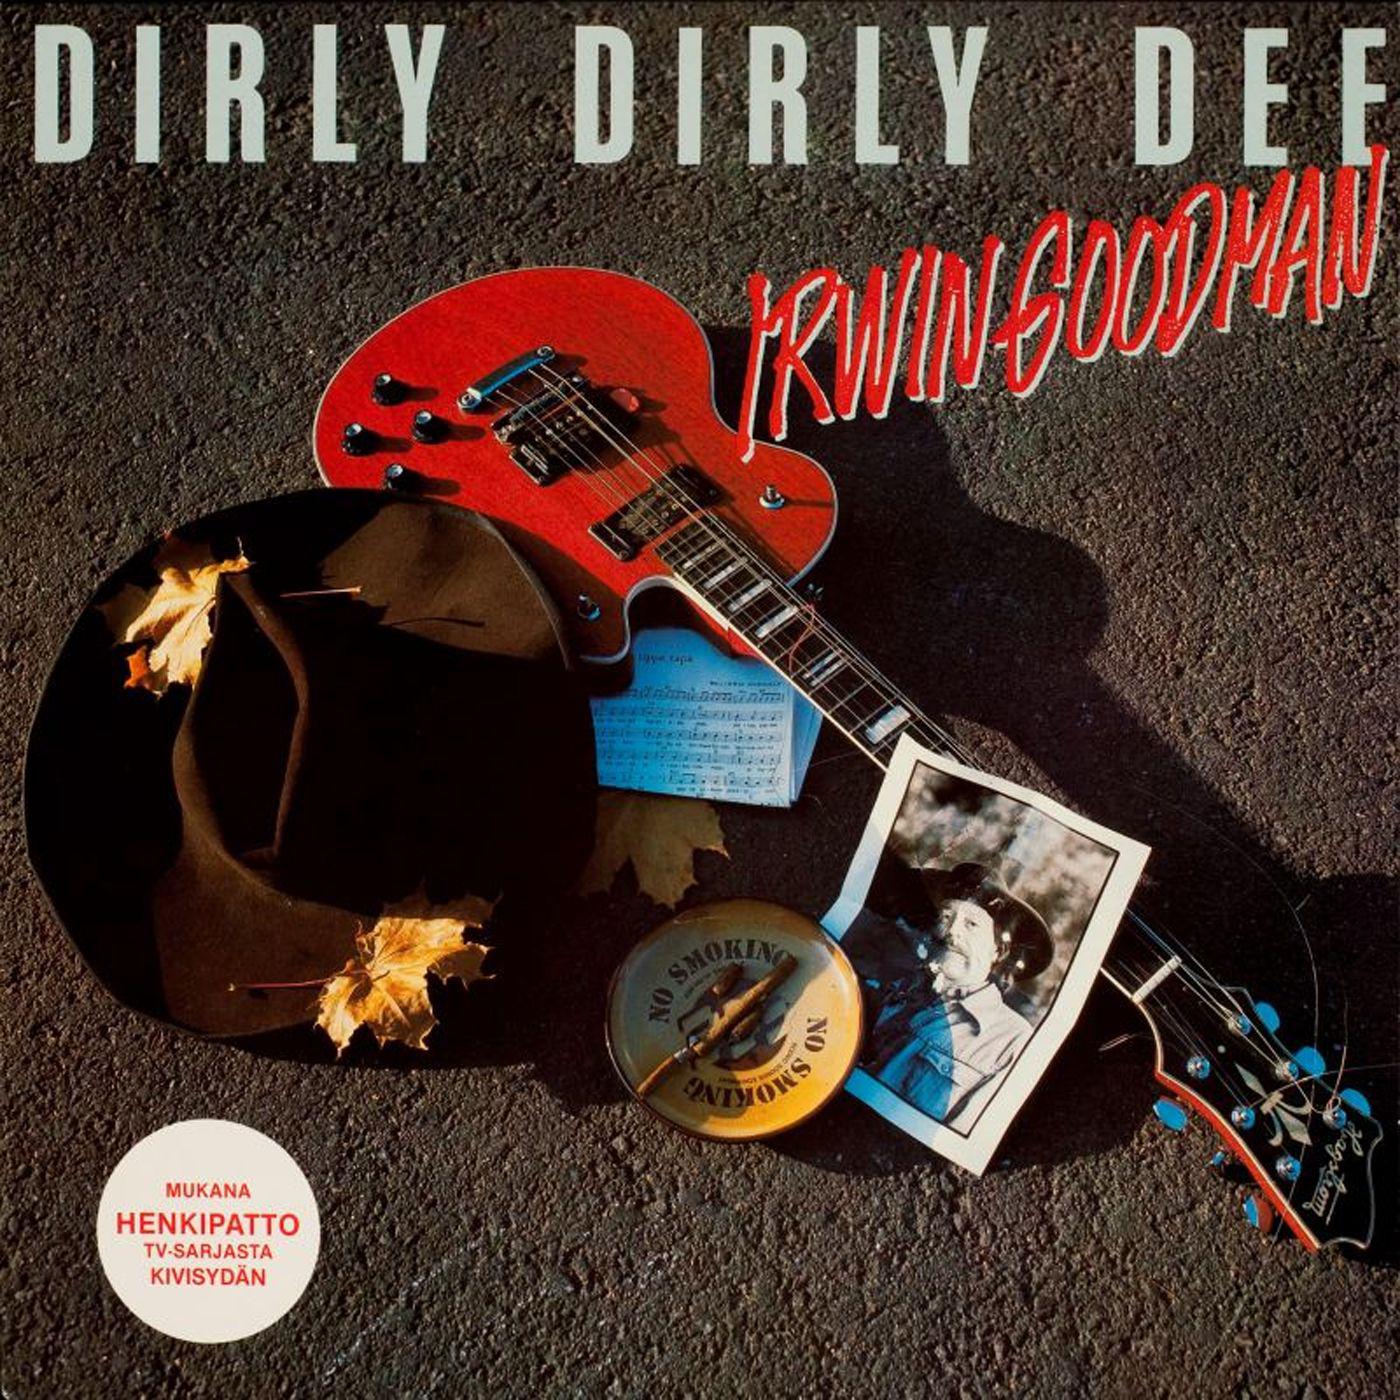 Dirly dirly dee - Deluxe Version